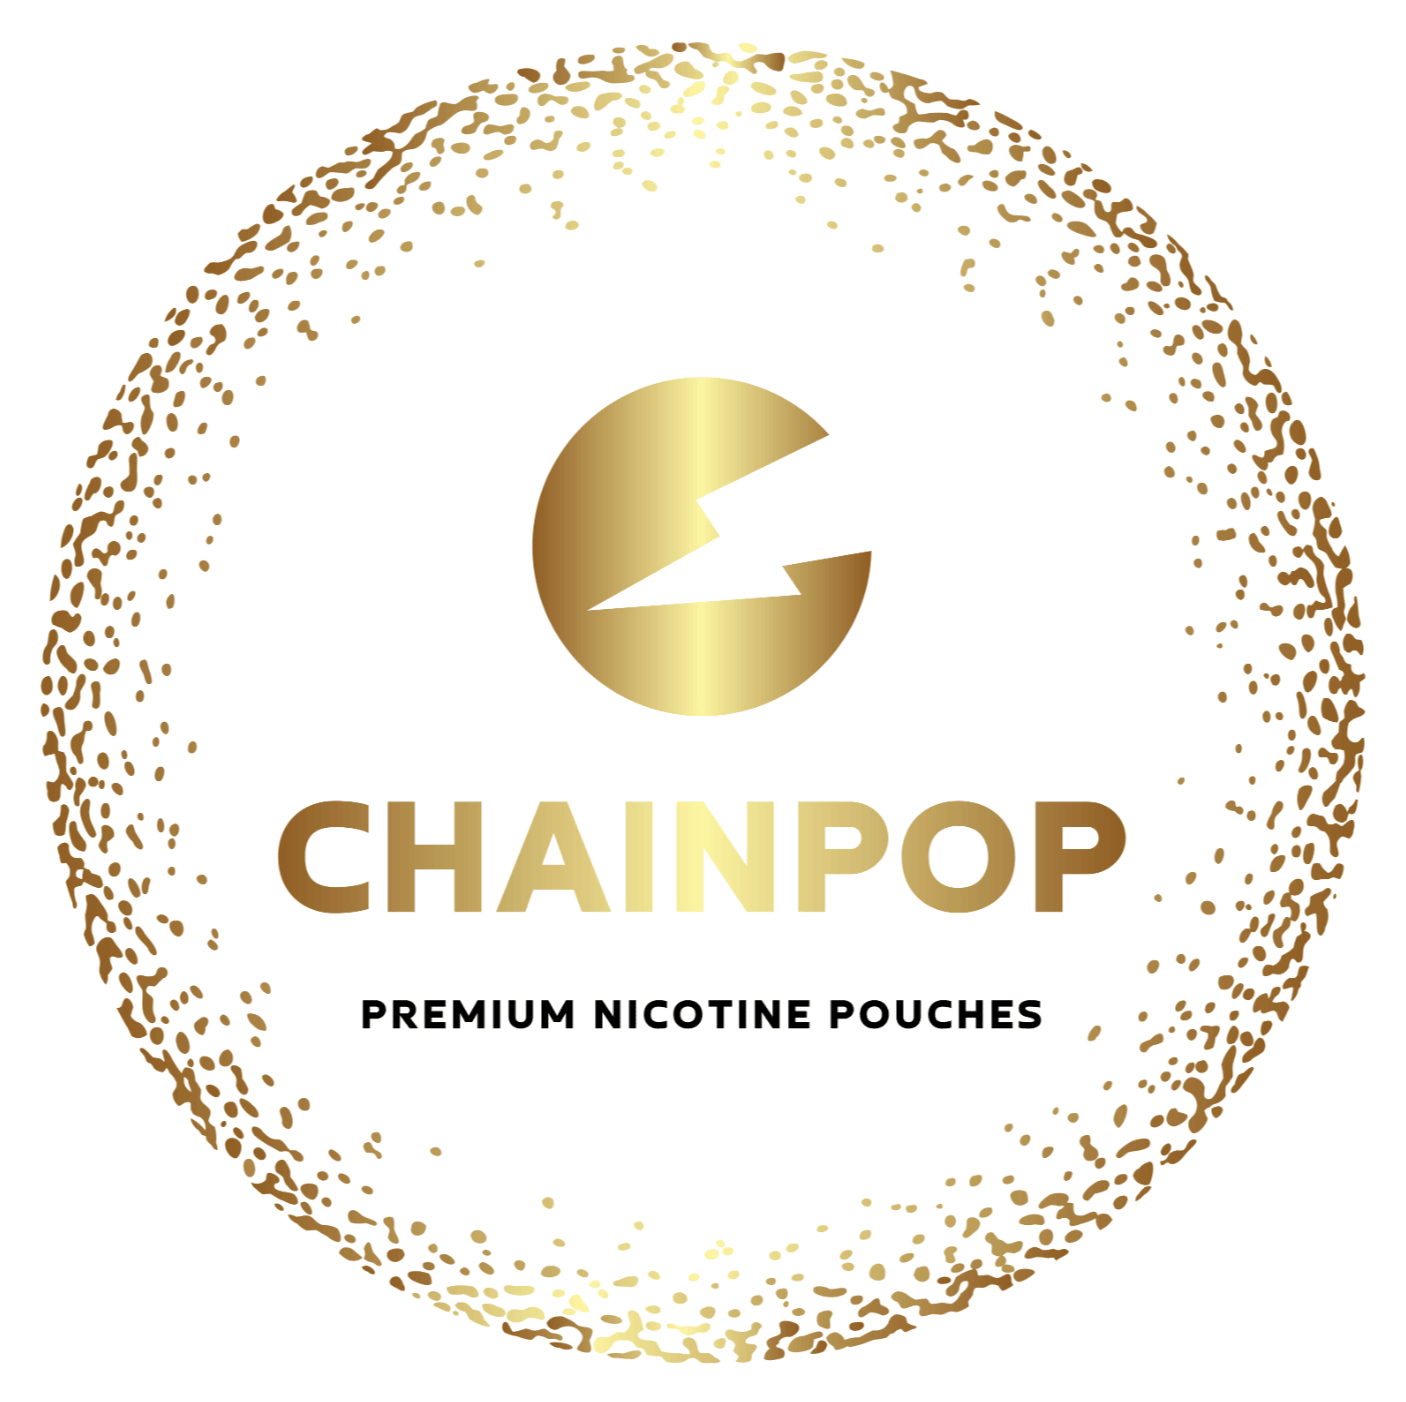 Chainpop nikotiinipussit logo